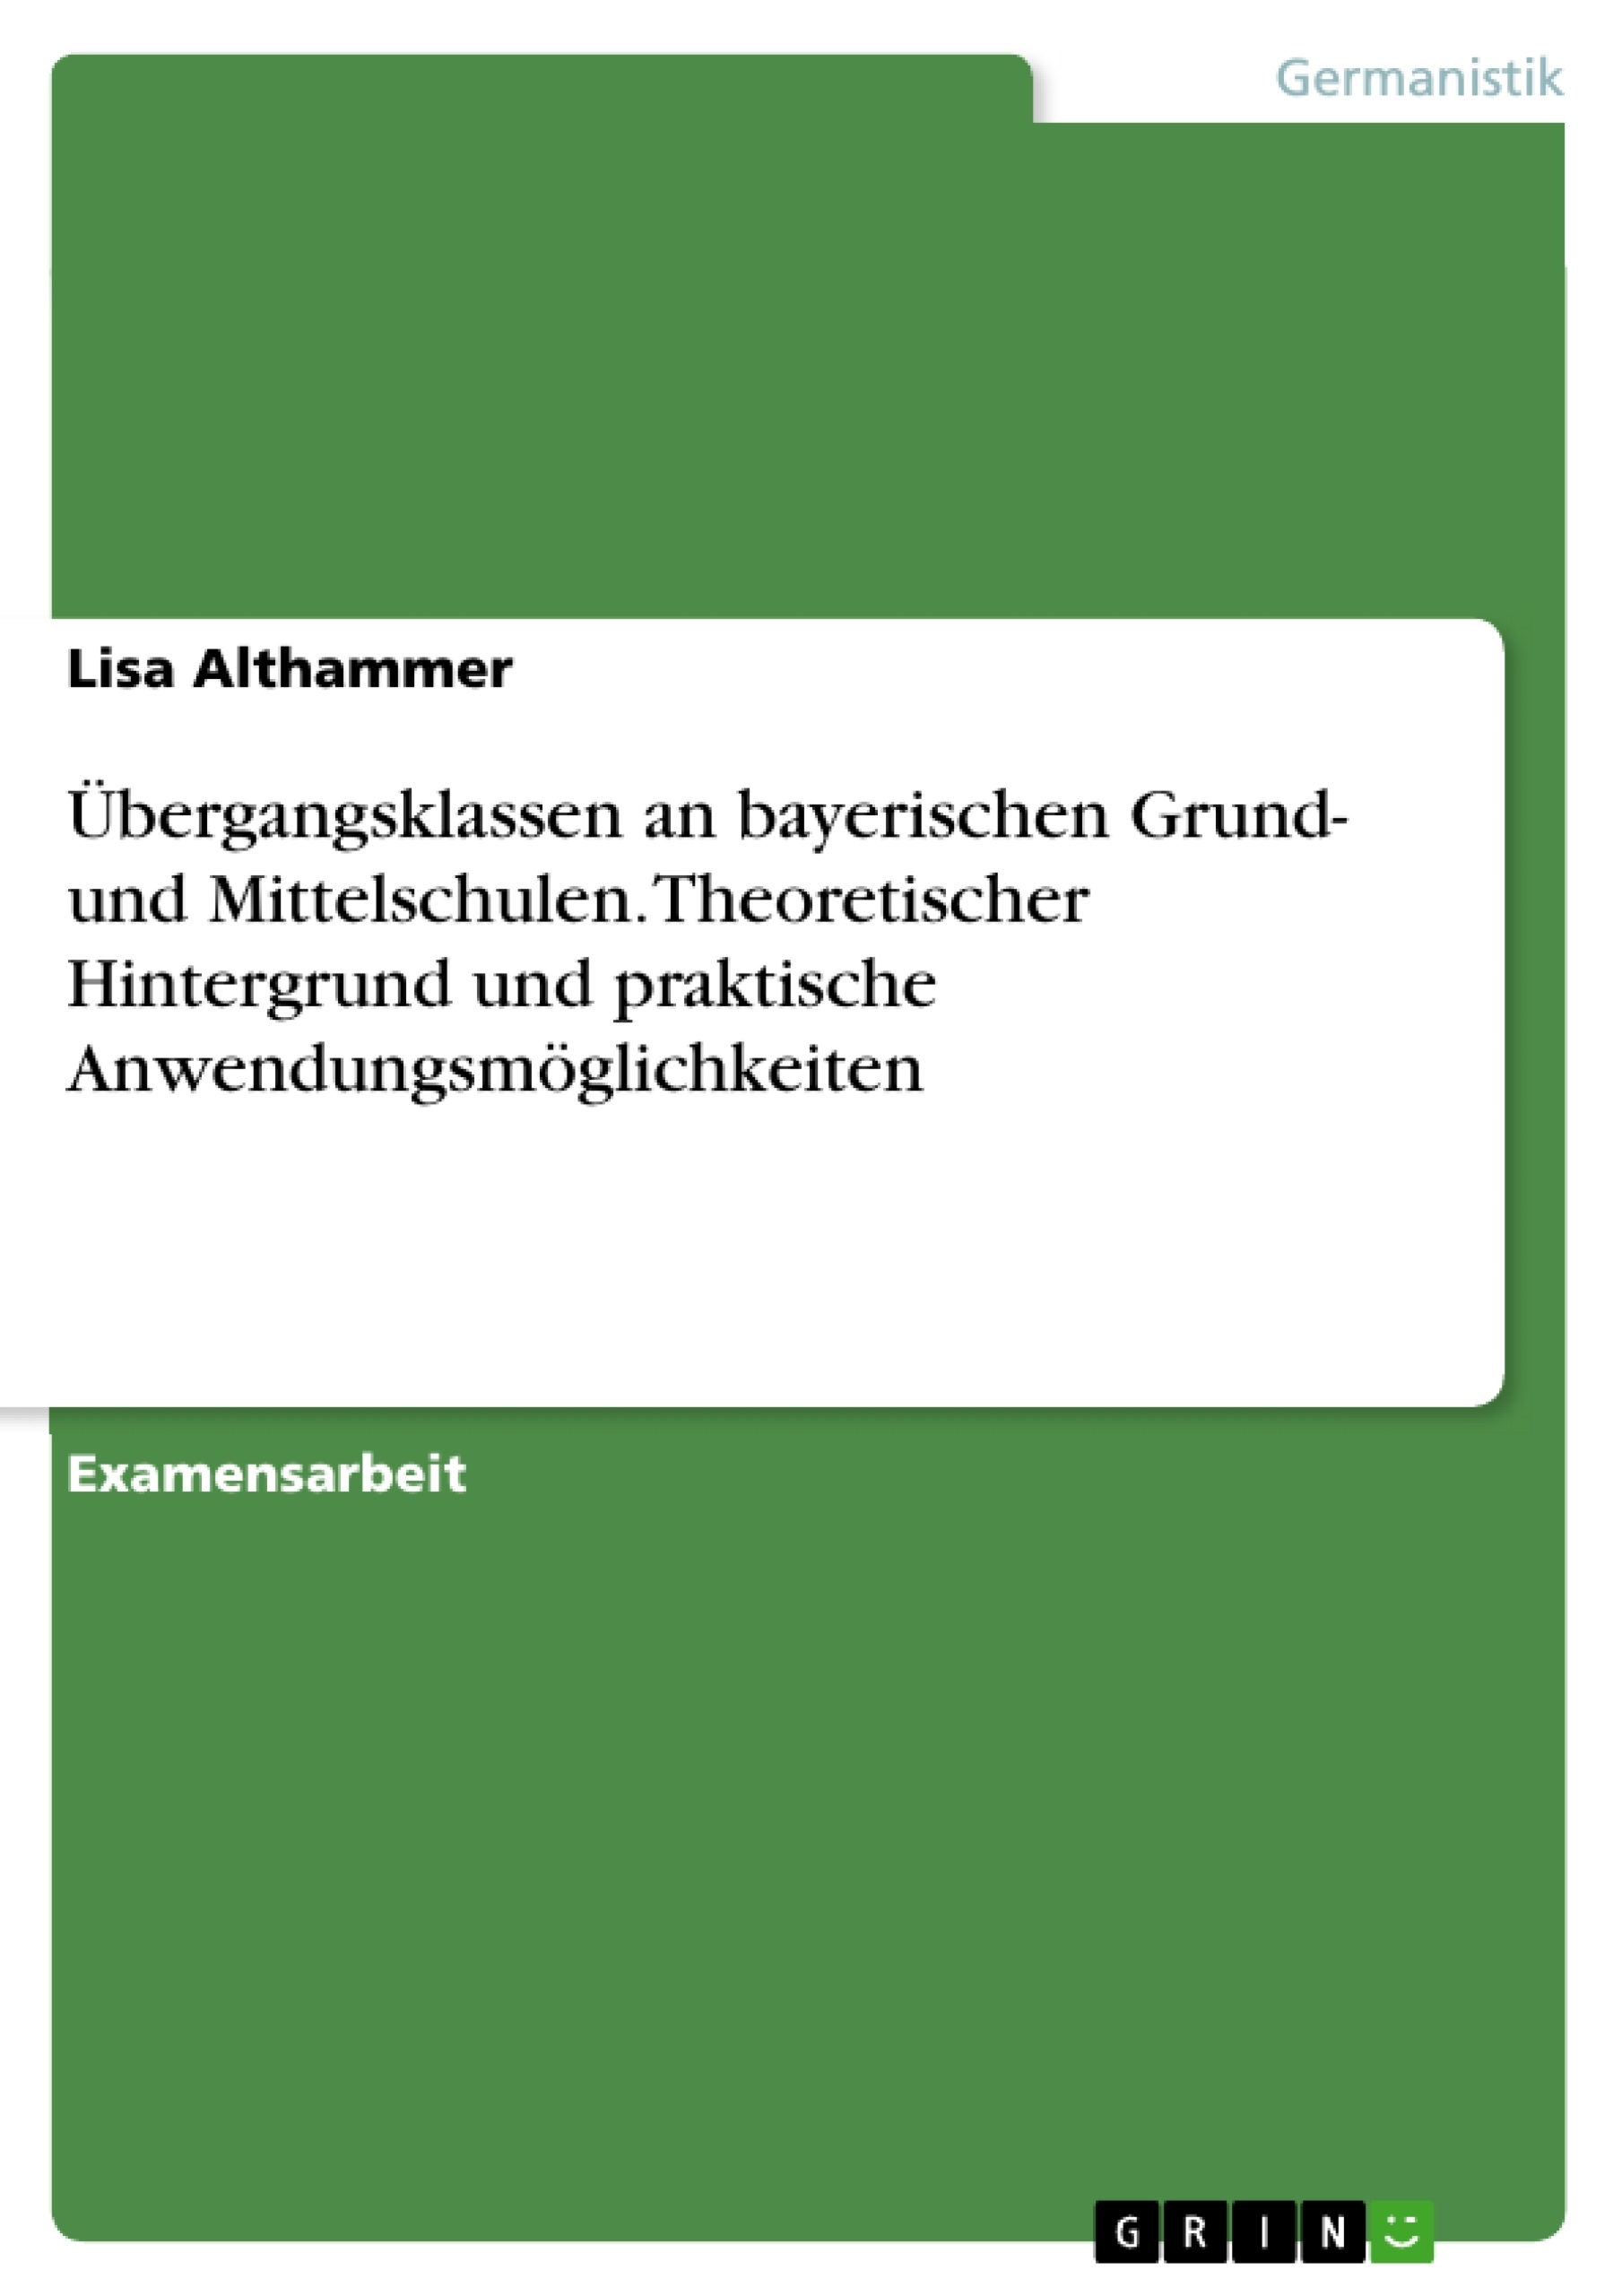 Titre: Übergangsklassen an bayerischen Grund- und Mittelschulen. Theoretischer Hintergrund und praktische Anwendungsmöglichkeiten